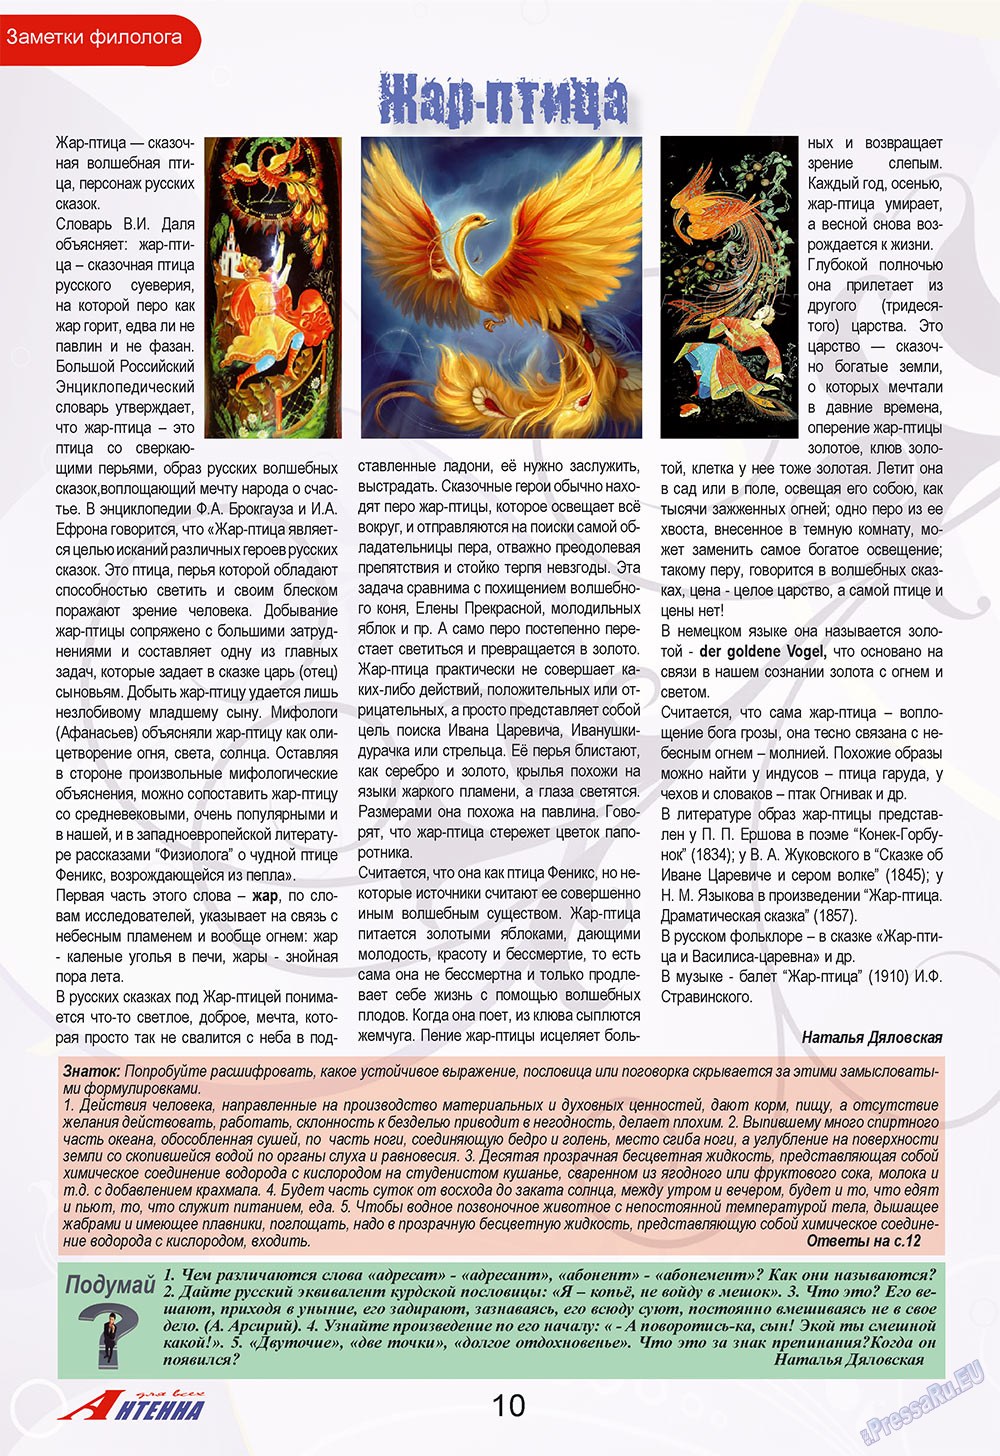 Антенна, журнал. 2009 №7 стр.10